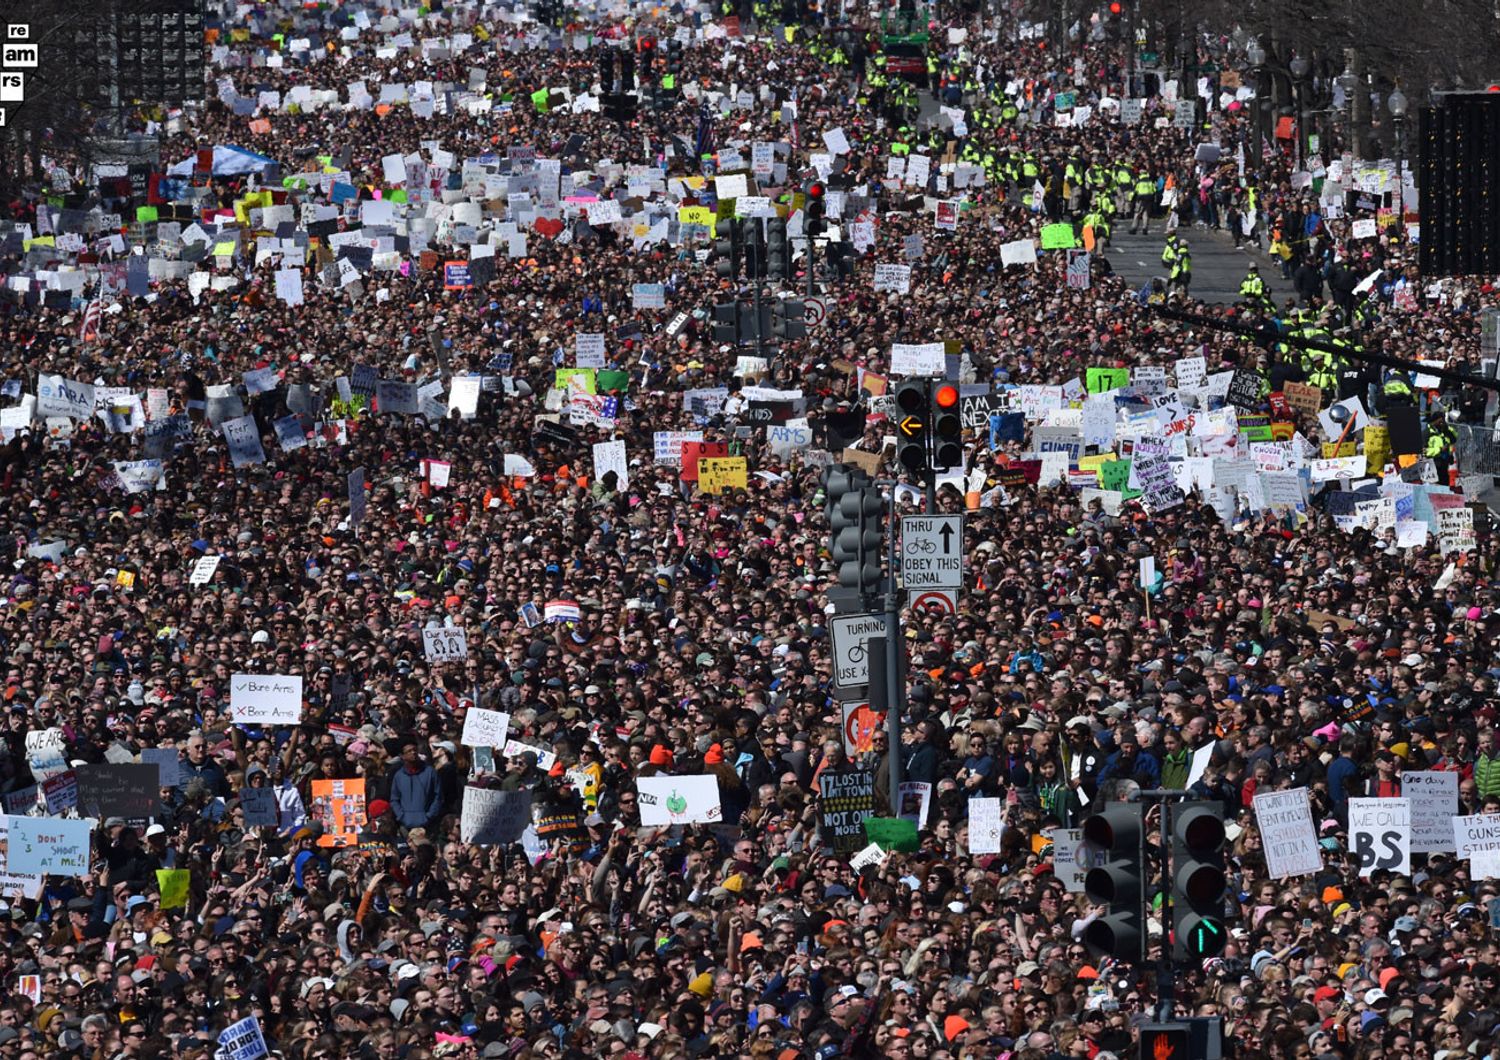 Washington, folla immensa si raduna in occasione della &ldquo;March for our lives&rdquo; contro l&rsquo;uso delle armi negli Stati Uniti, 24 marzo 2018.&nbsp;